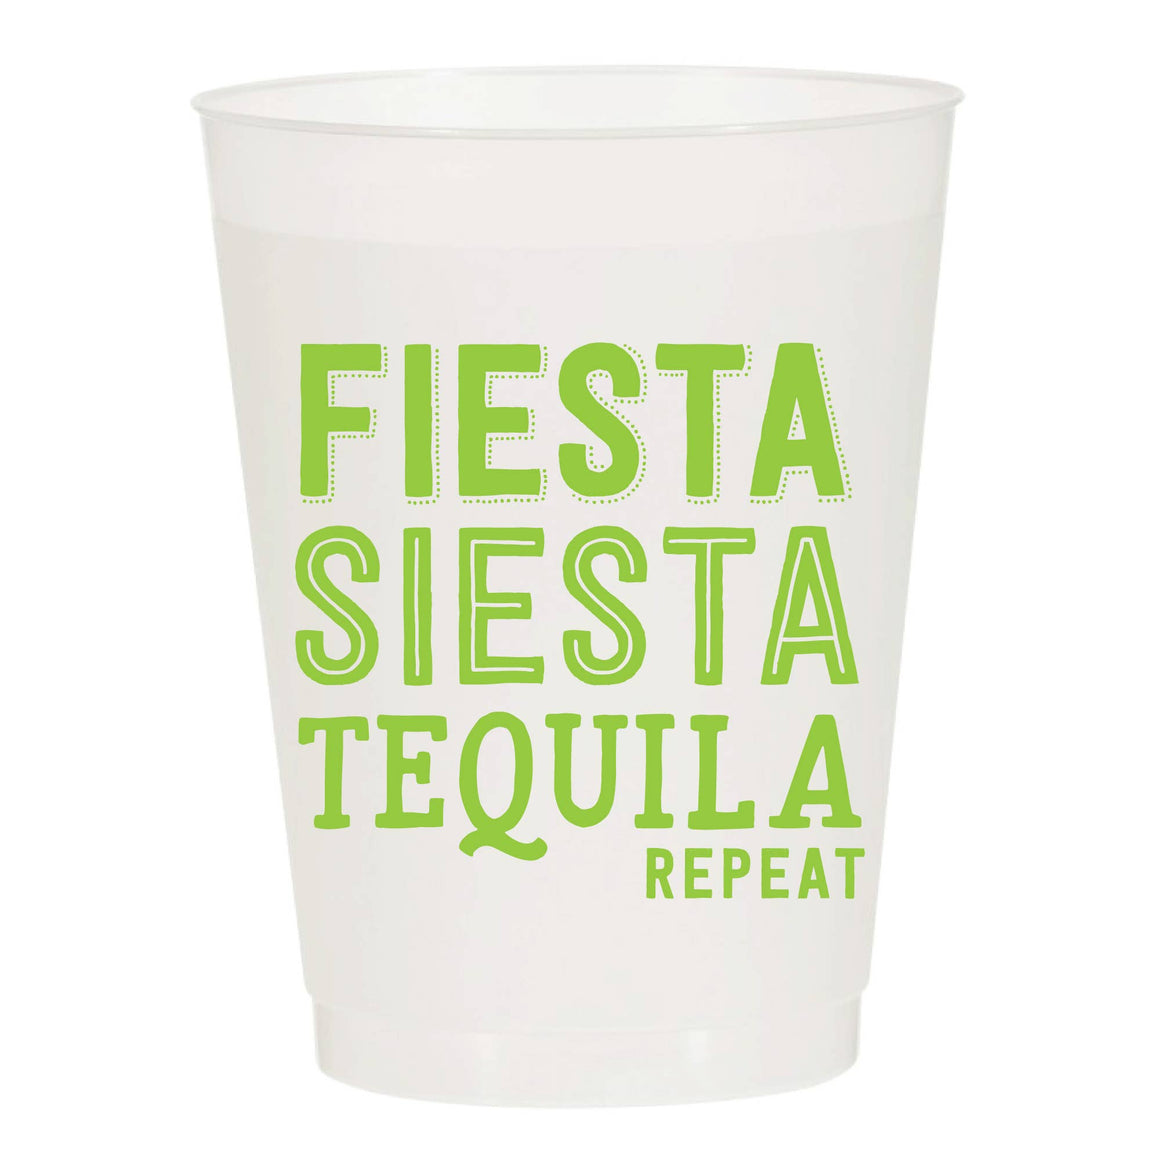 Fiesta Siesta Tequila Reusable Cups | Set of 6